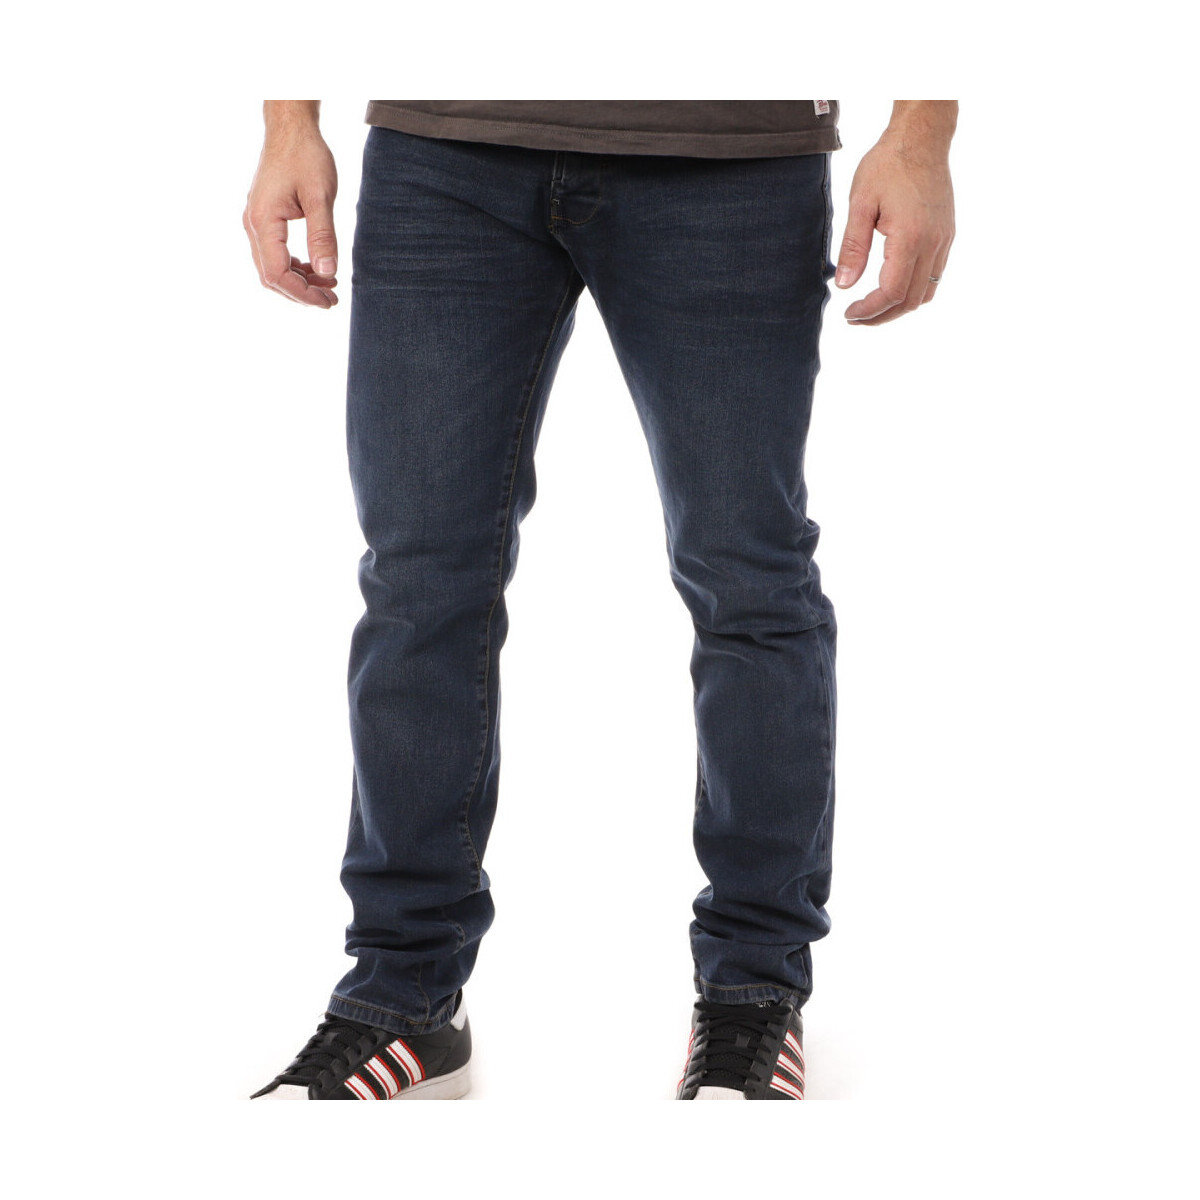 Abbigliamento Uomo Jeans dritti Rms 26 RM-5631 Blu